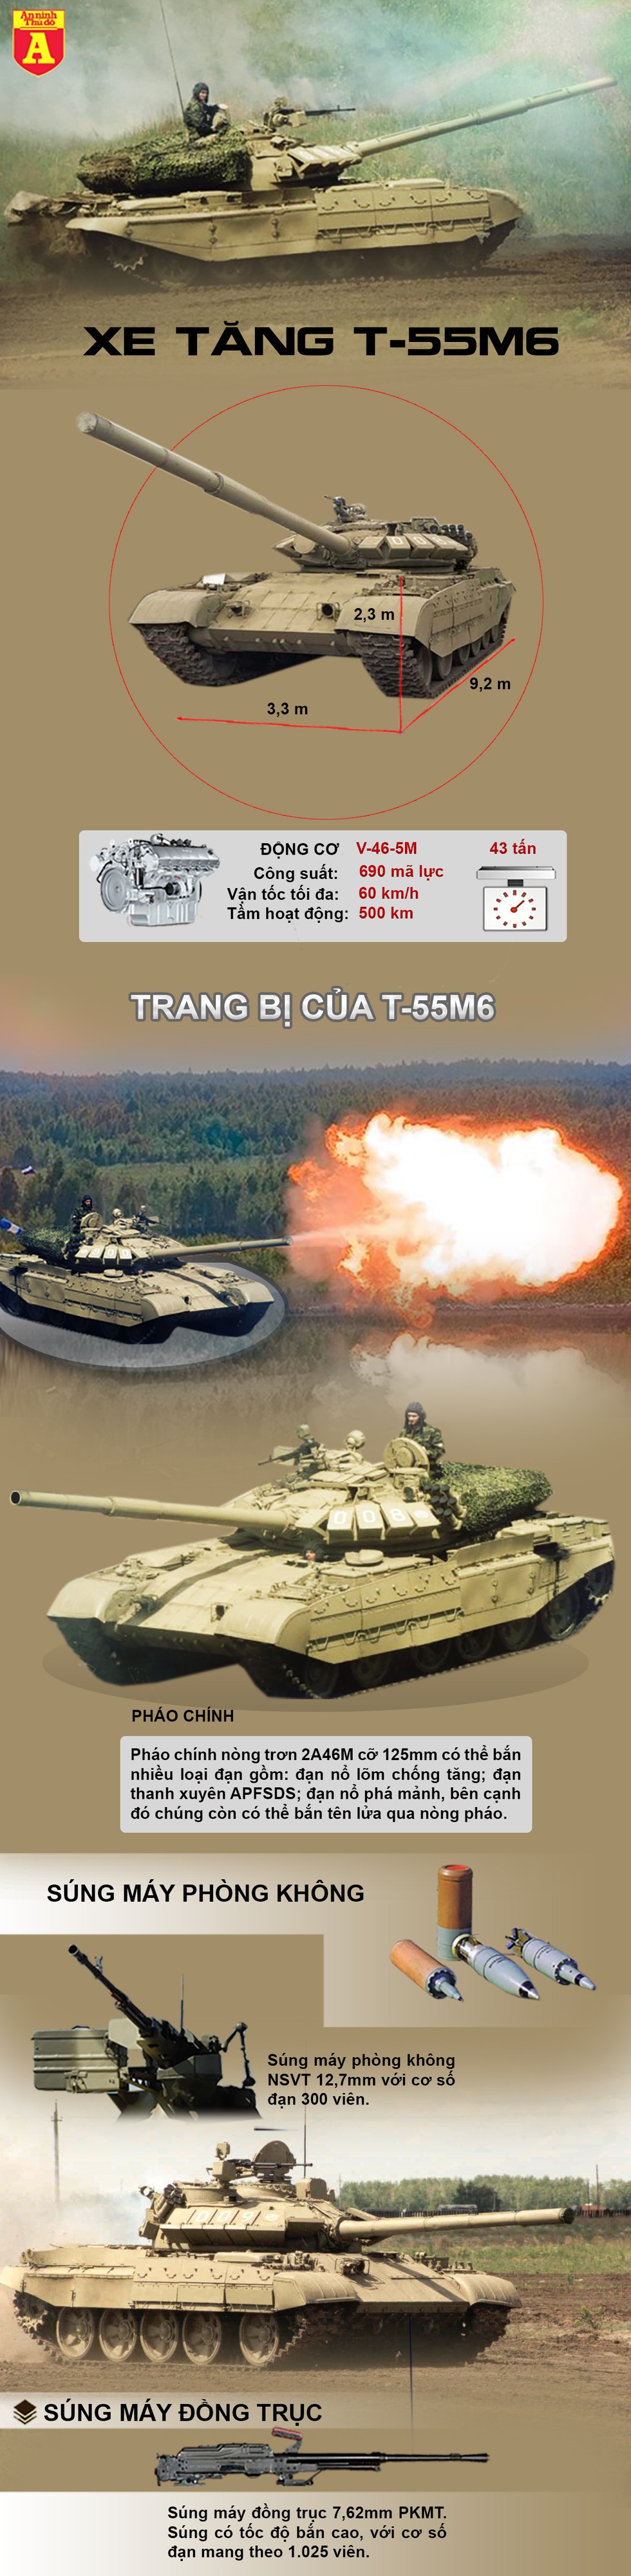 [Infographics] Nga "thất bại toàn tập" khi nâng cấp "cua thép" T-54/55 Liên Xô - Ảnh 1